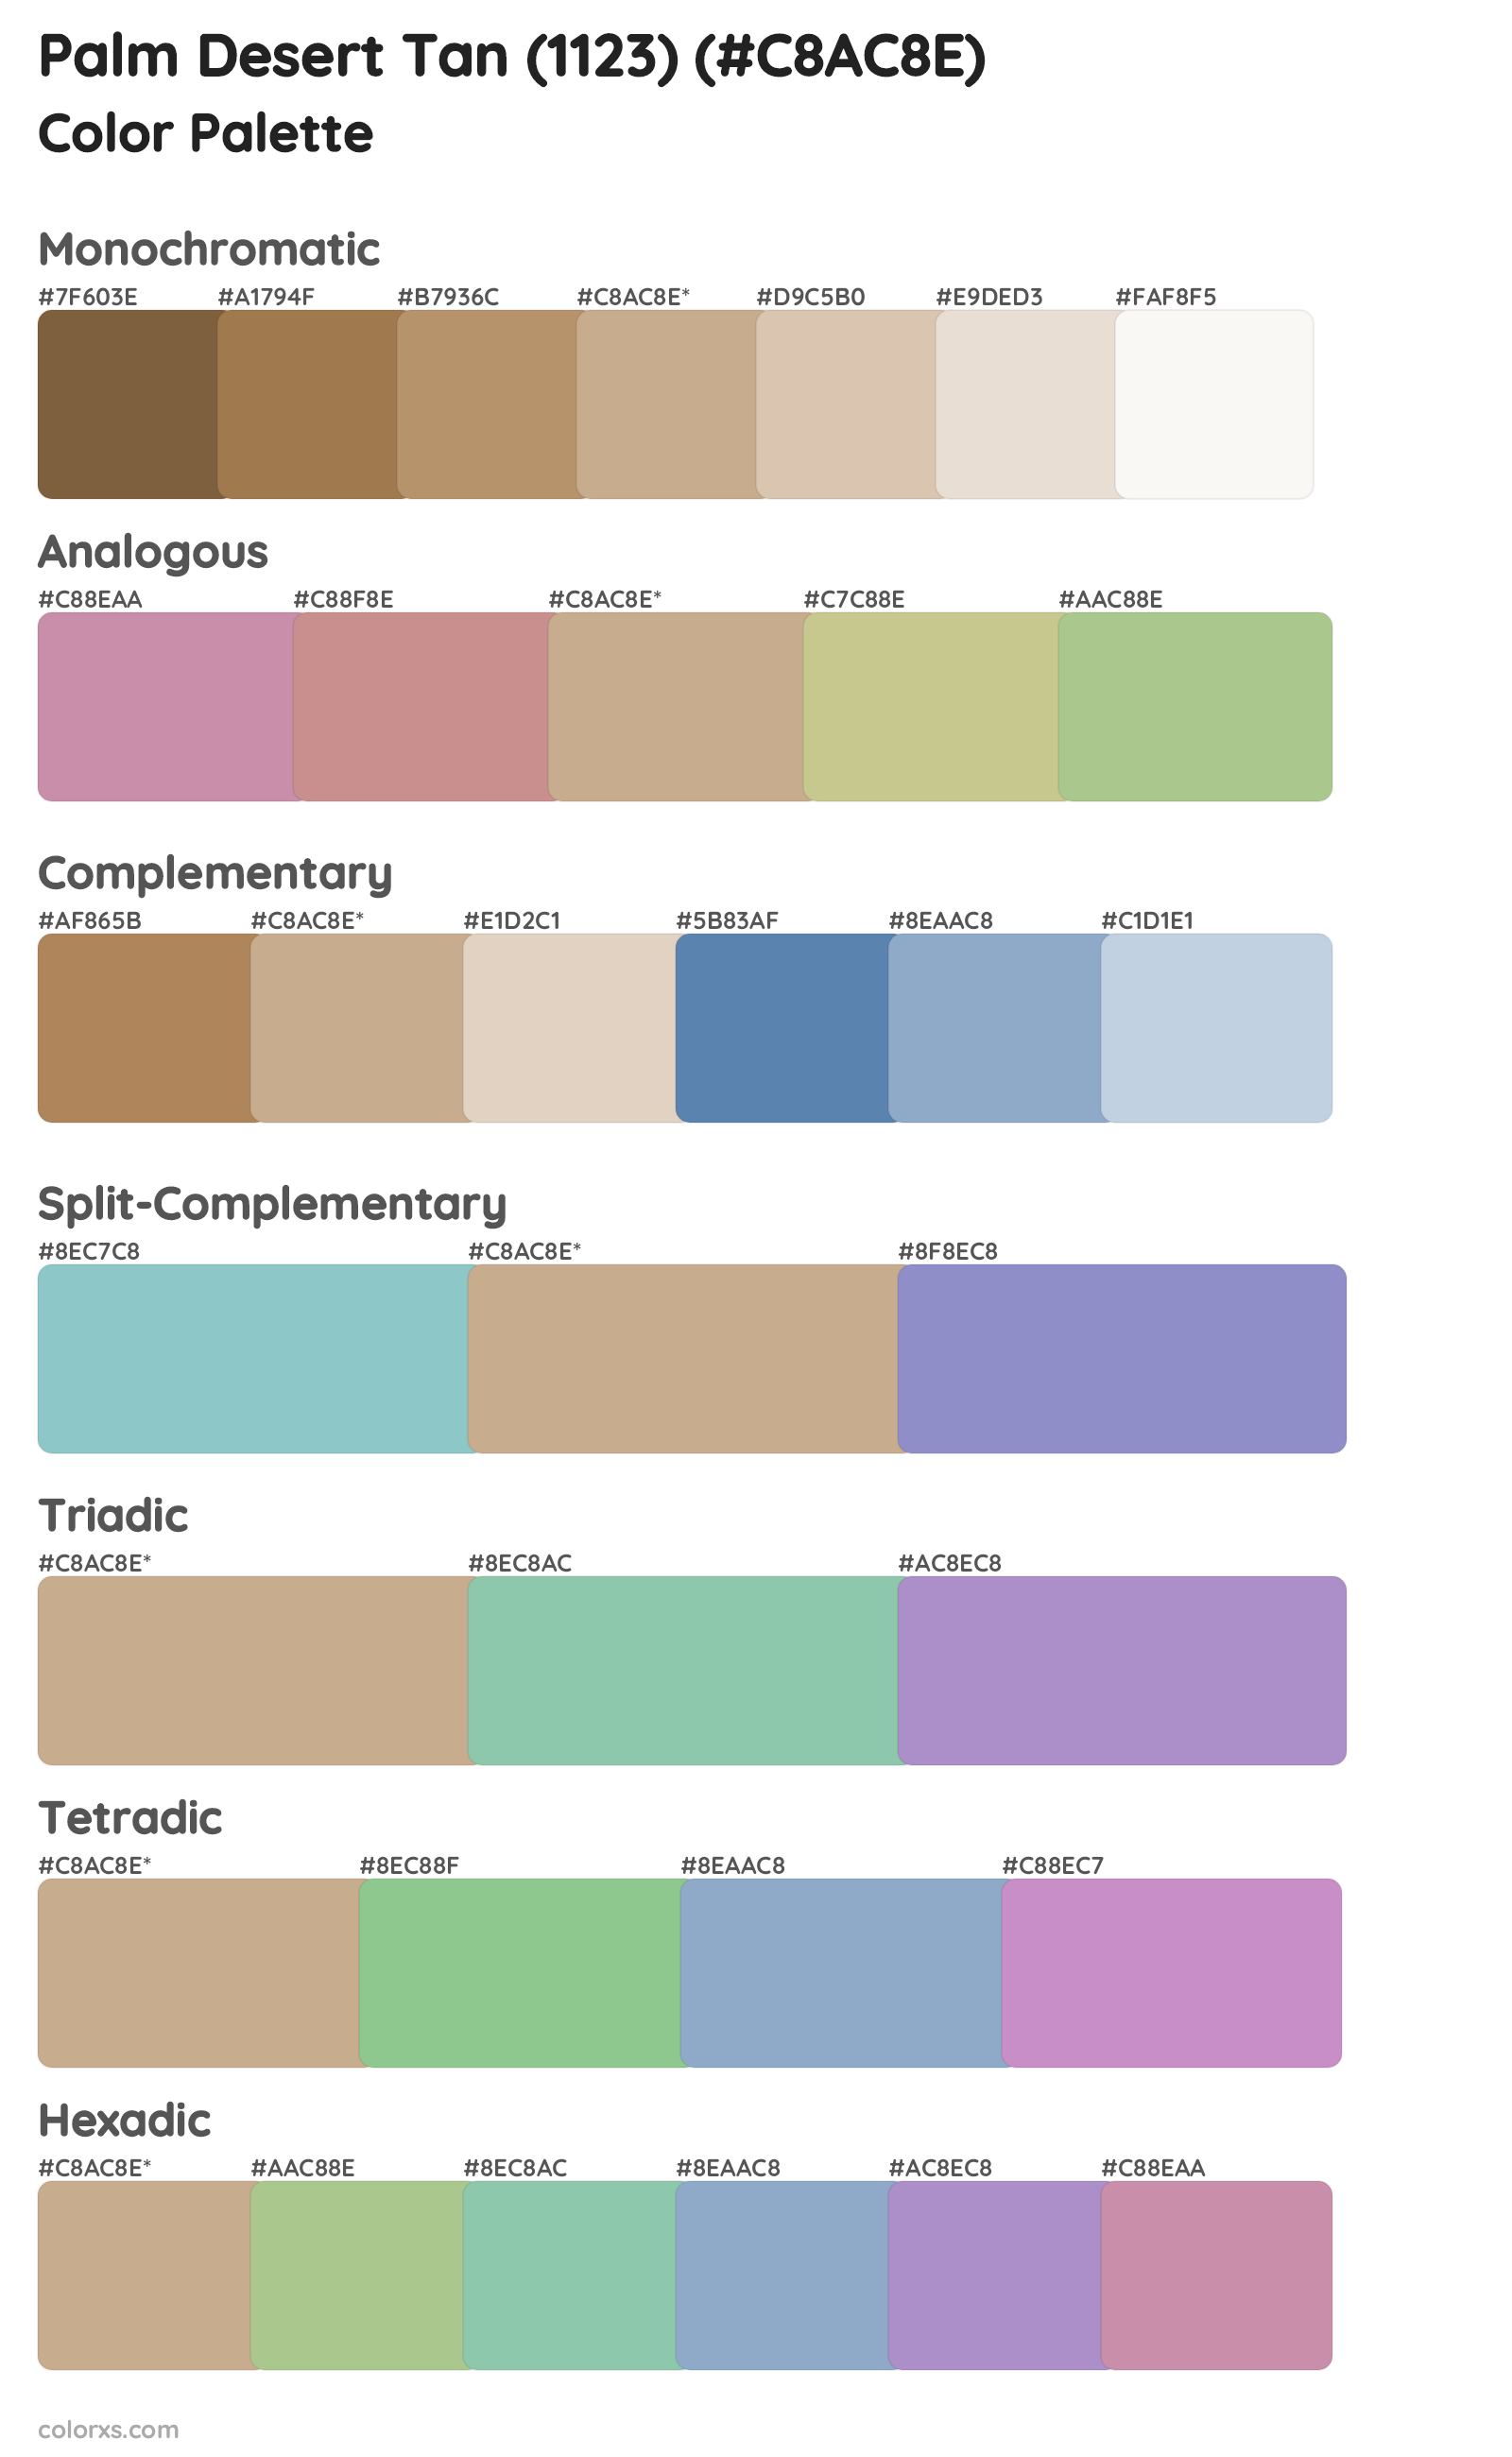 Palm Desert Tan (1123) Color Scheme Palettes